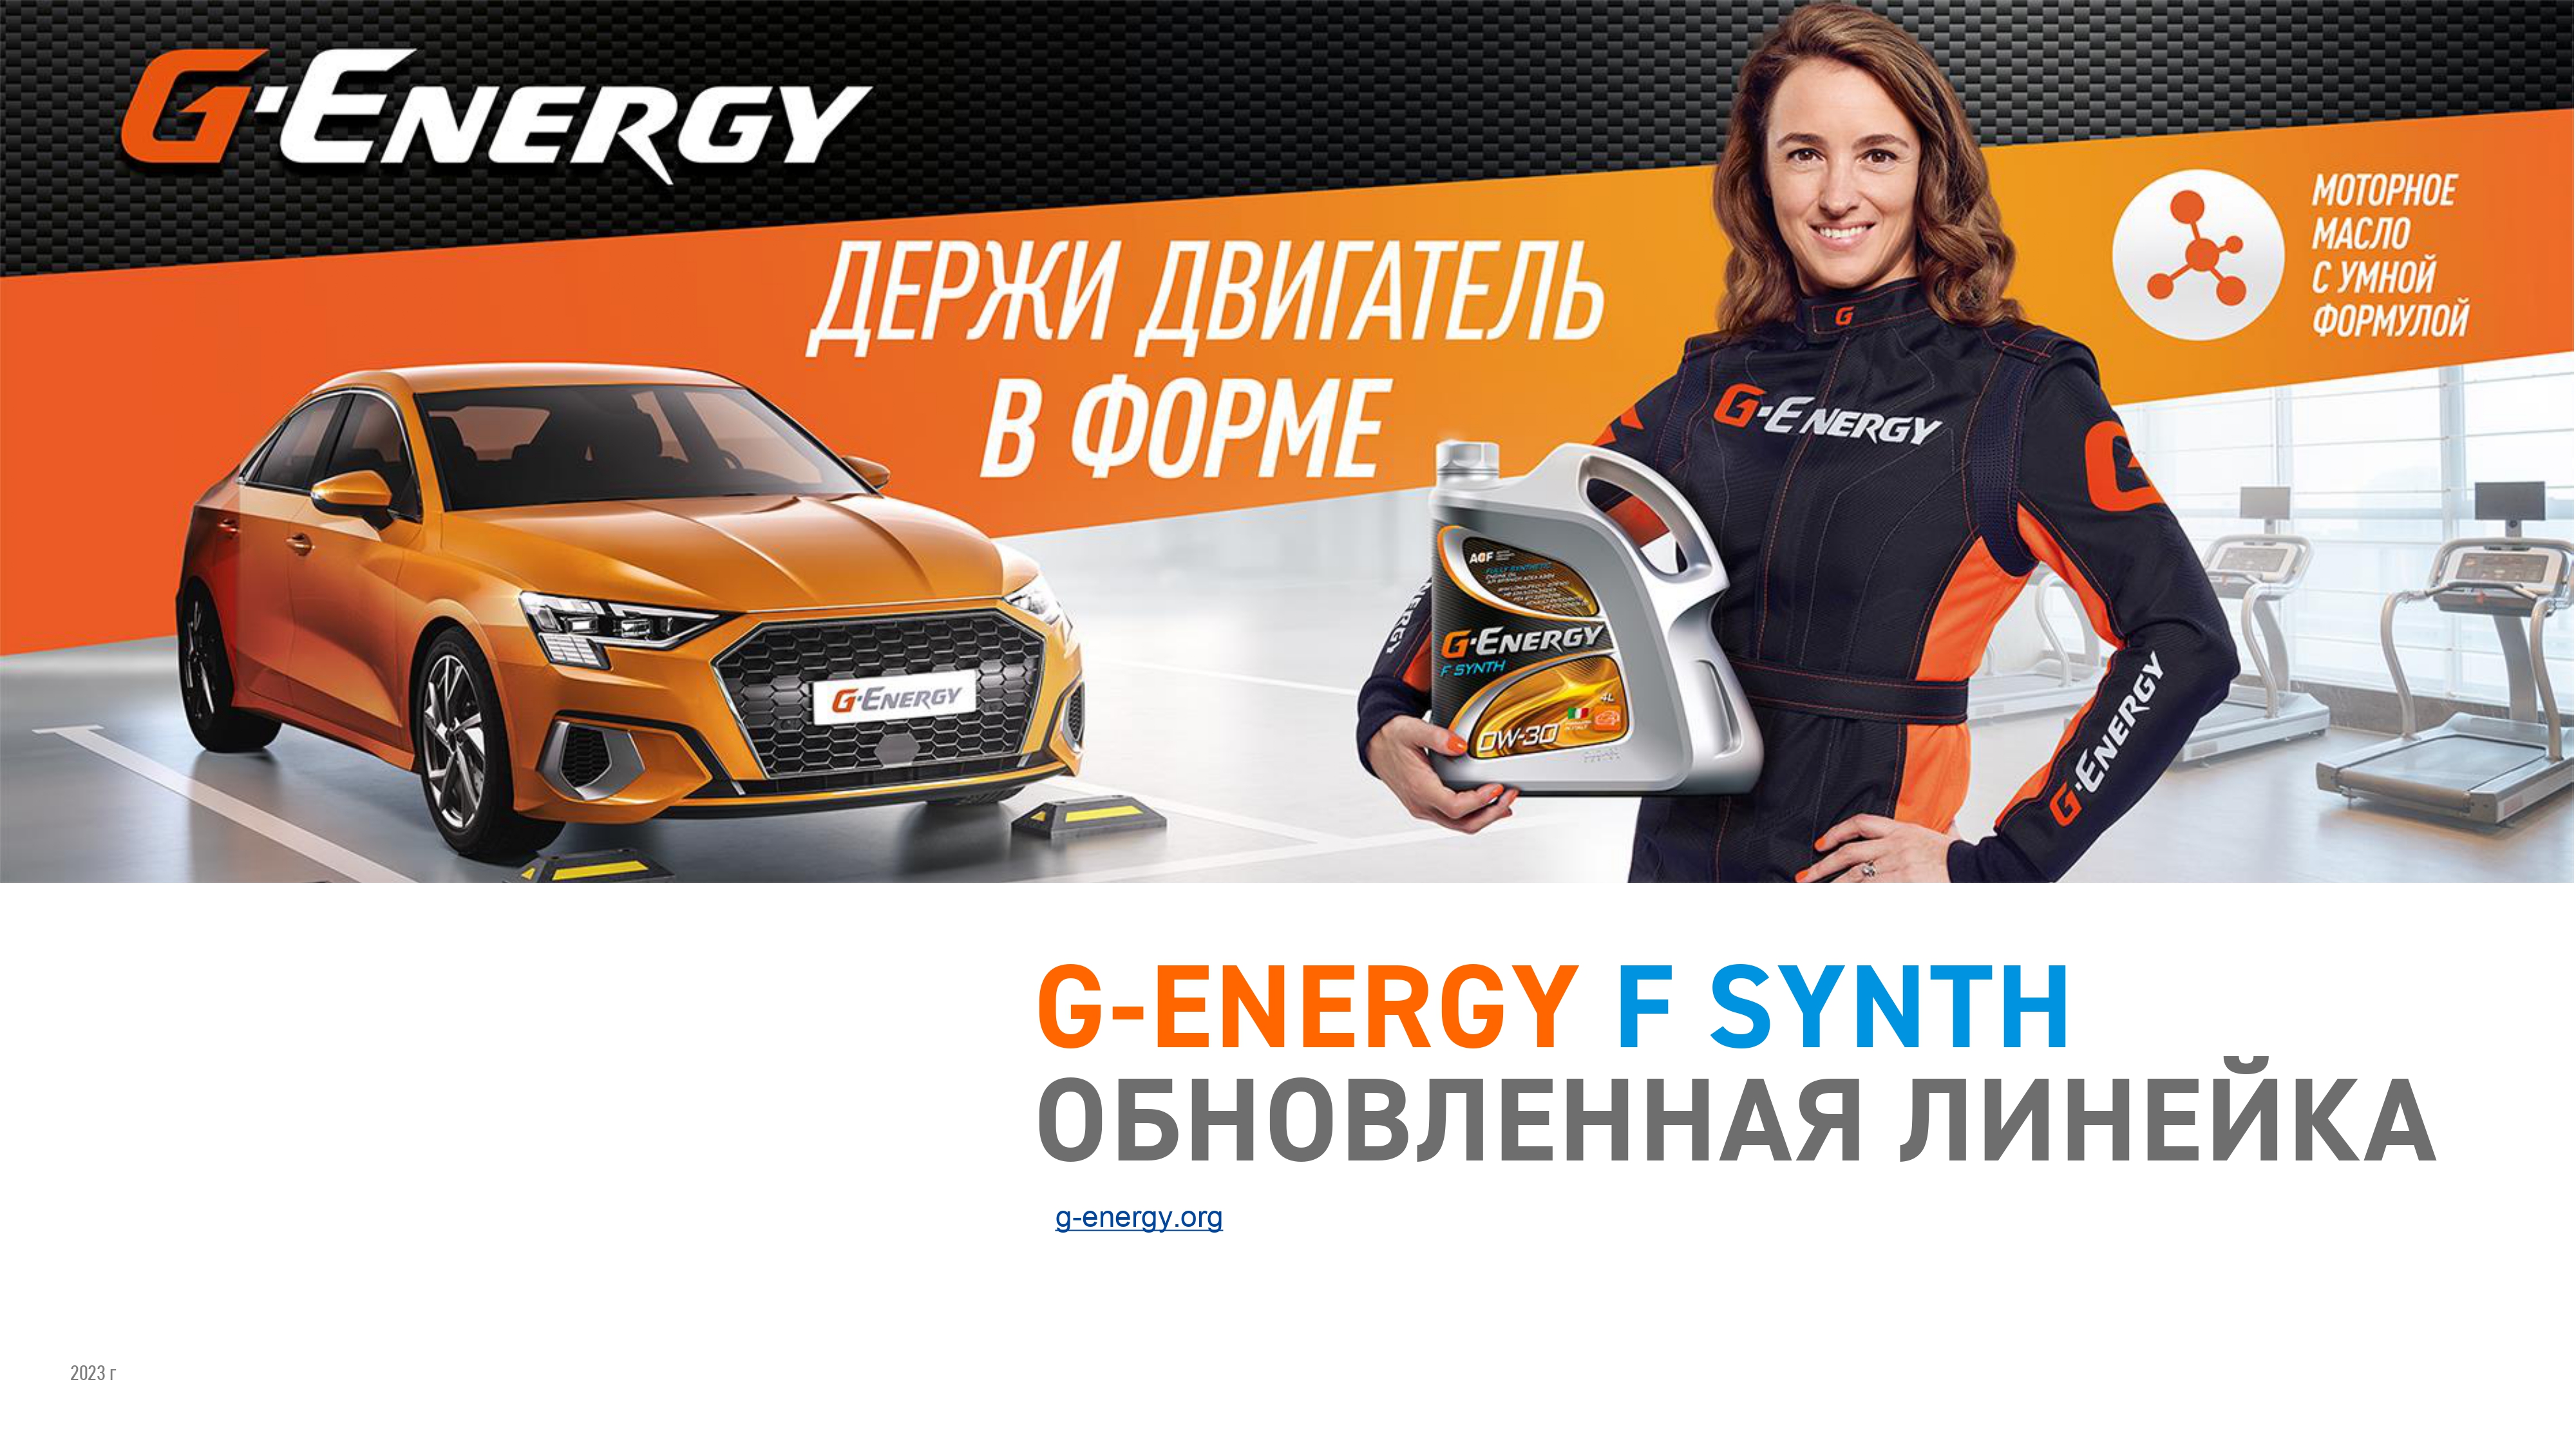 Встречайте обновленную линейку G-Energy F Synth!